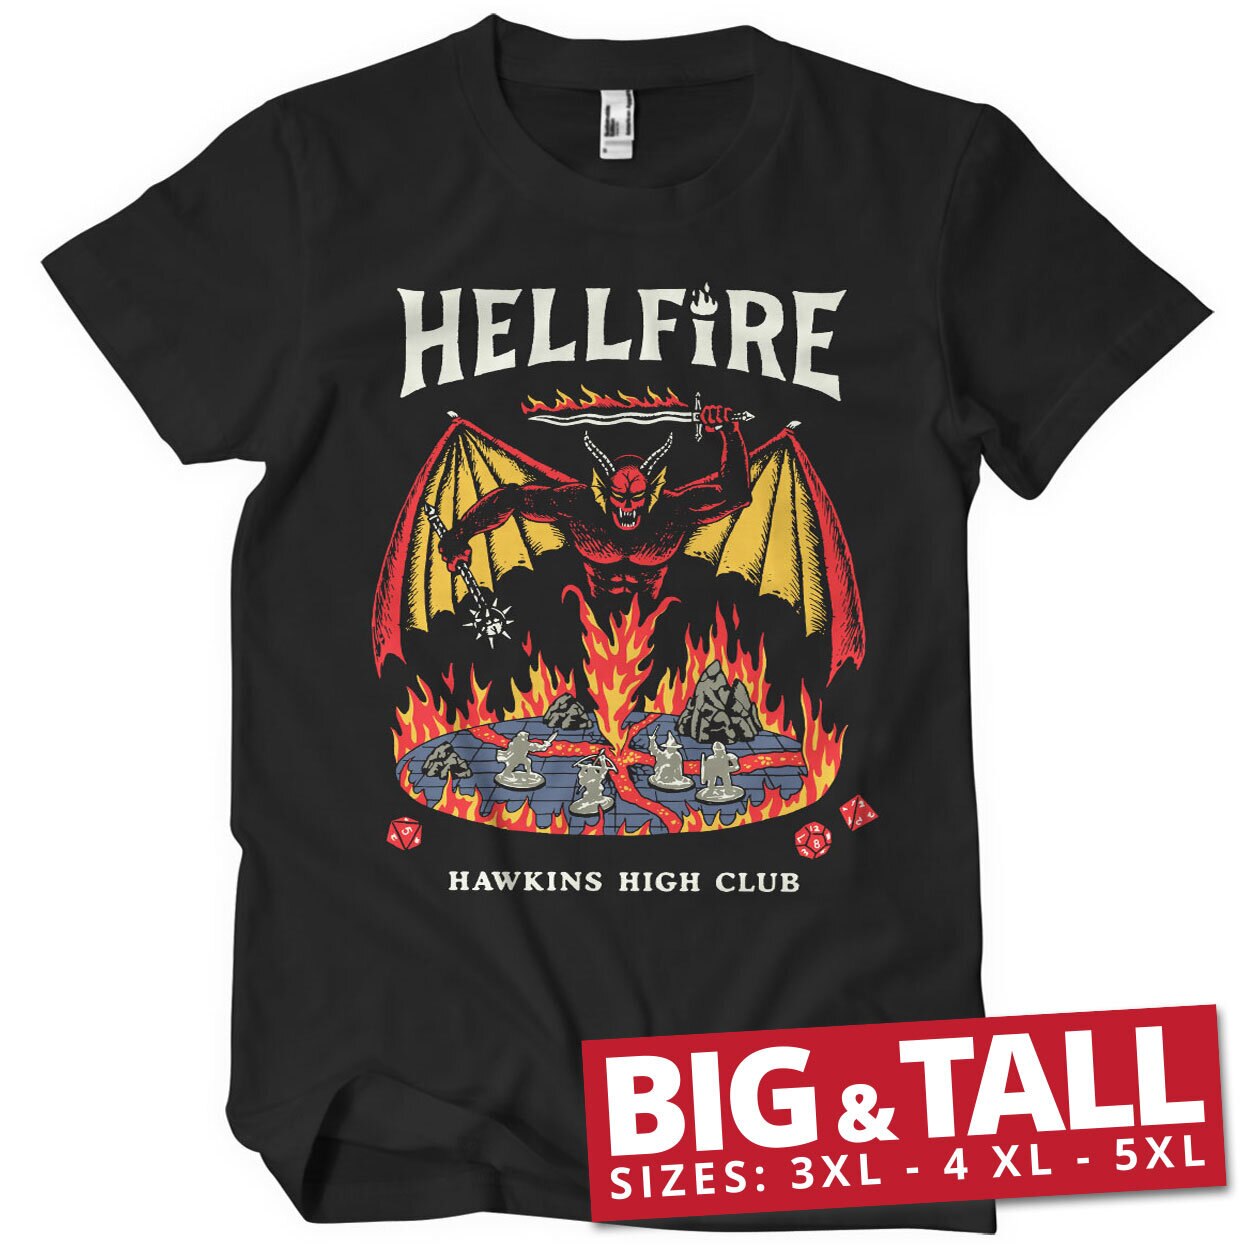 Hellfire Hawkins High Club Big & Tall T-Shirt